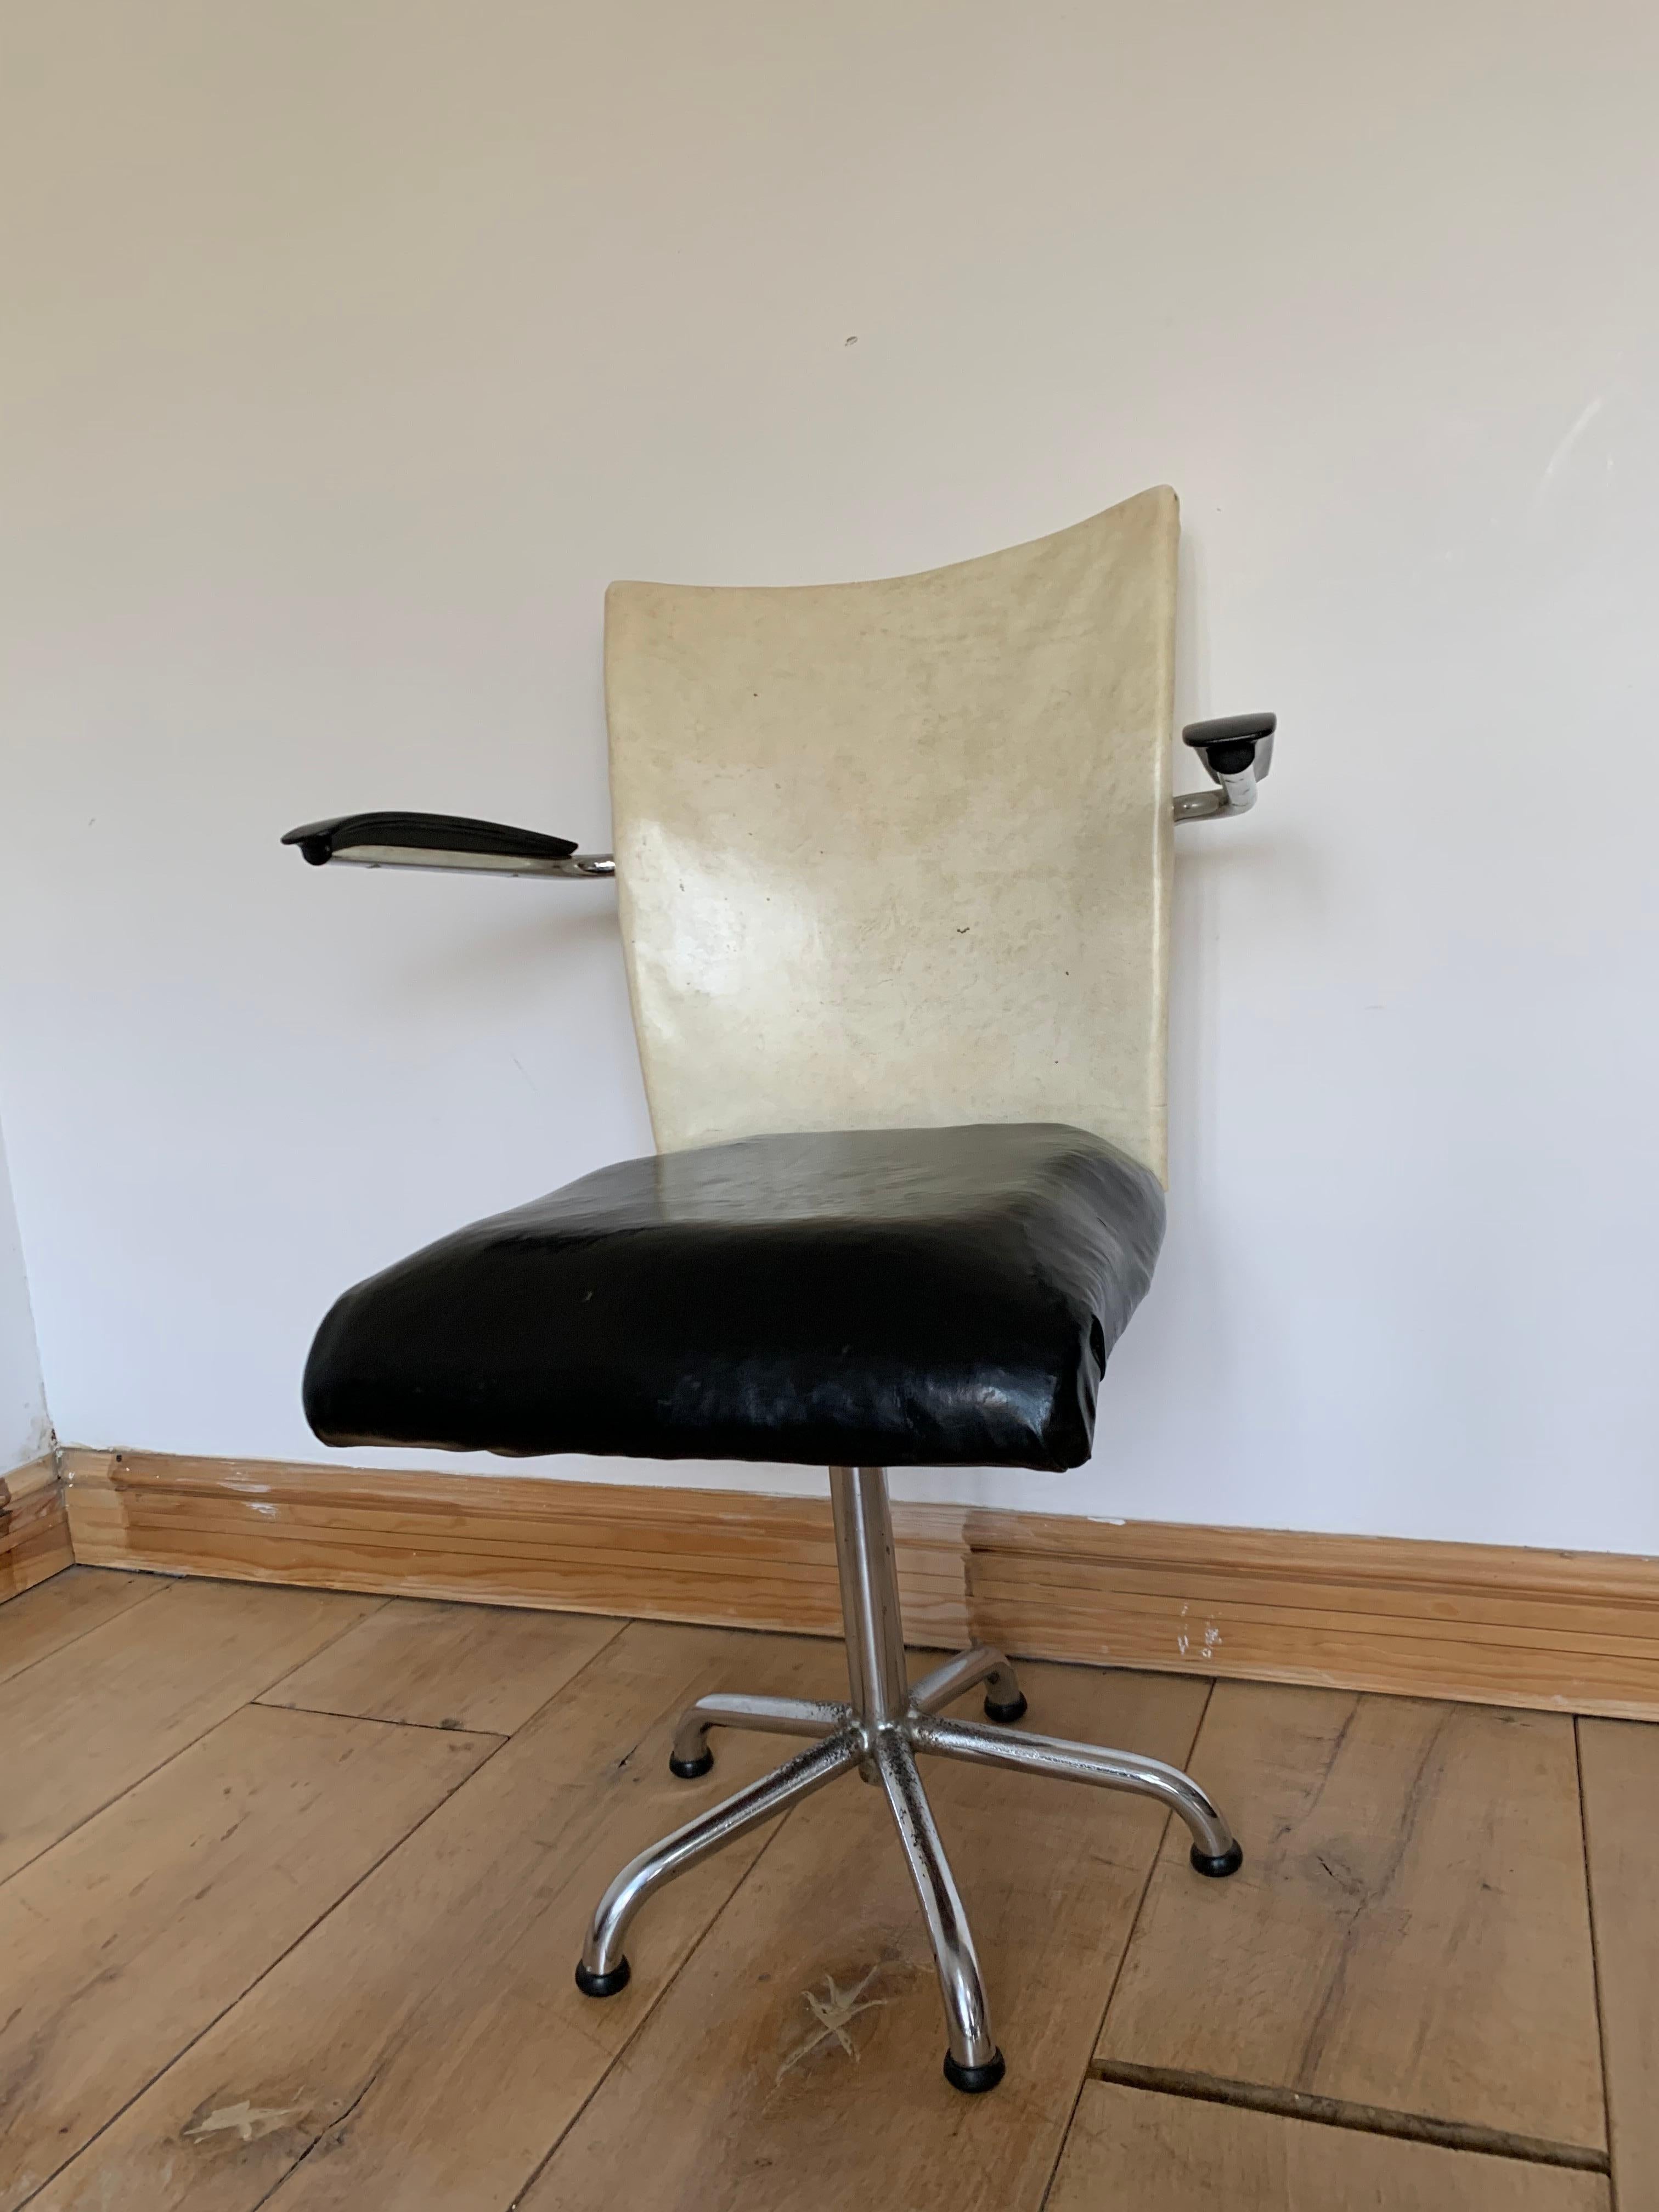 20th Century Industrial Desk Chair from Gebroeders De Wit, Toon de Wit, 1960s In Good Condition For Sale In Bunnik, NL